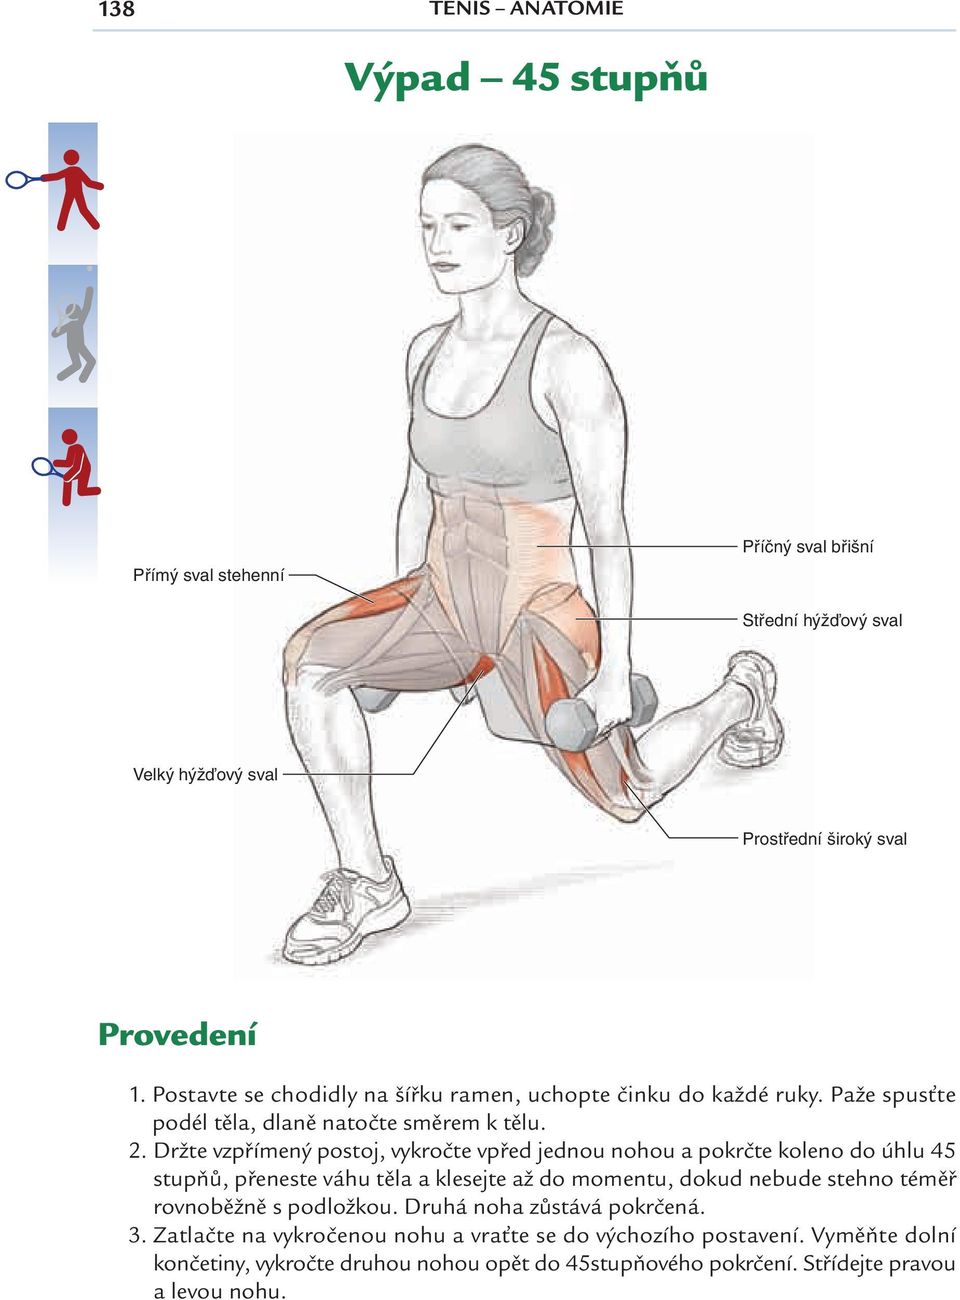 Držte vzpřímený postoj, vykročte vpřed jednou nohou a pokrčte koleno do úhlu 45 stupňů, přeneste váhu těla a klesejte až do momentu, dokud nebude stehno téměř